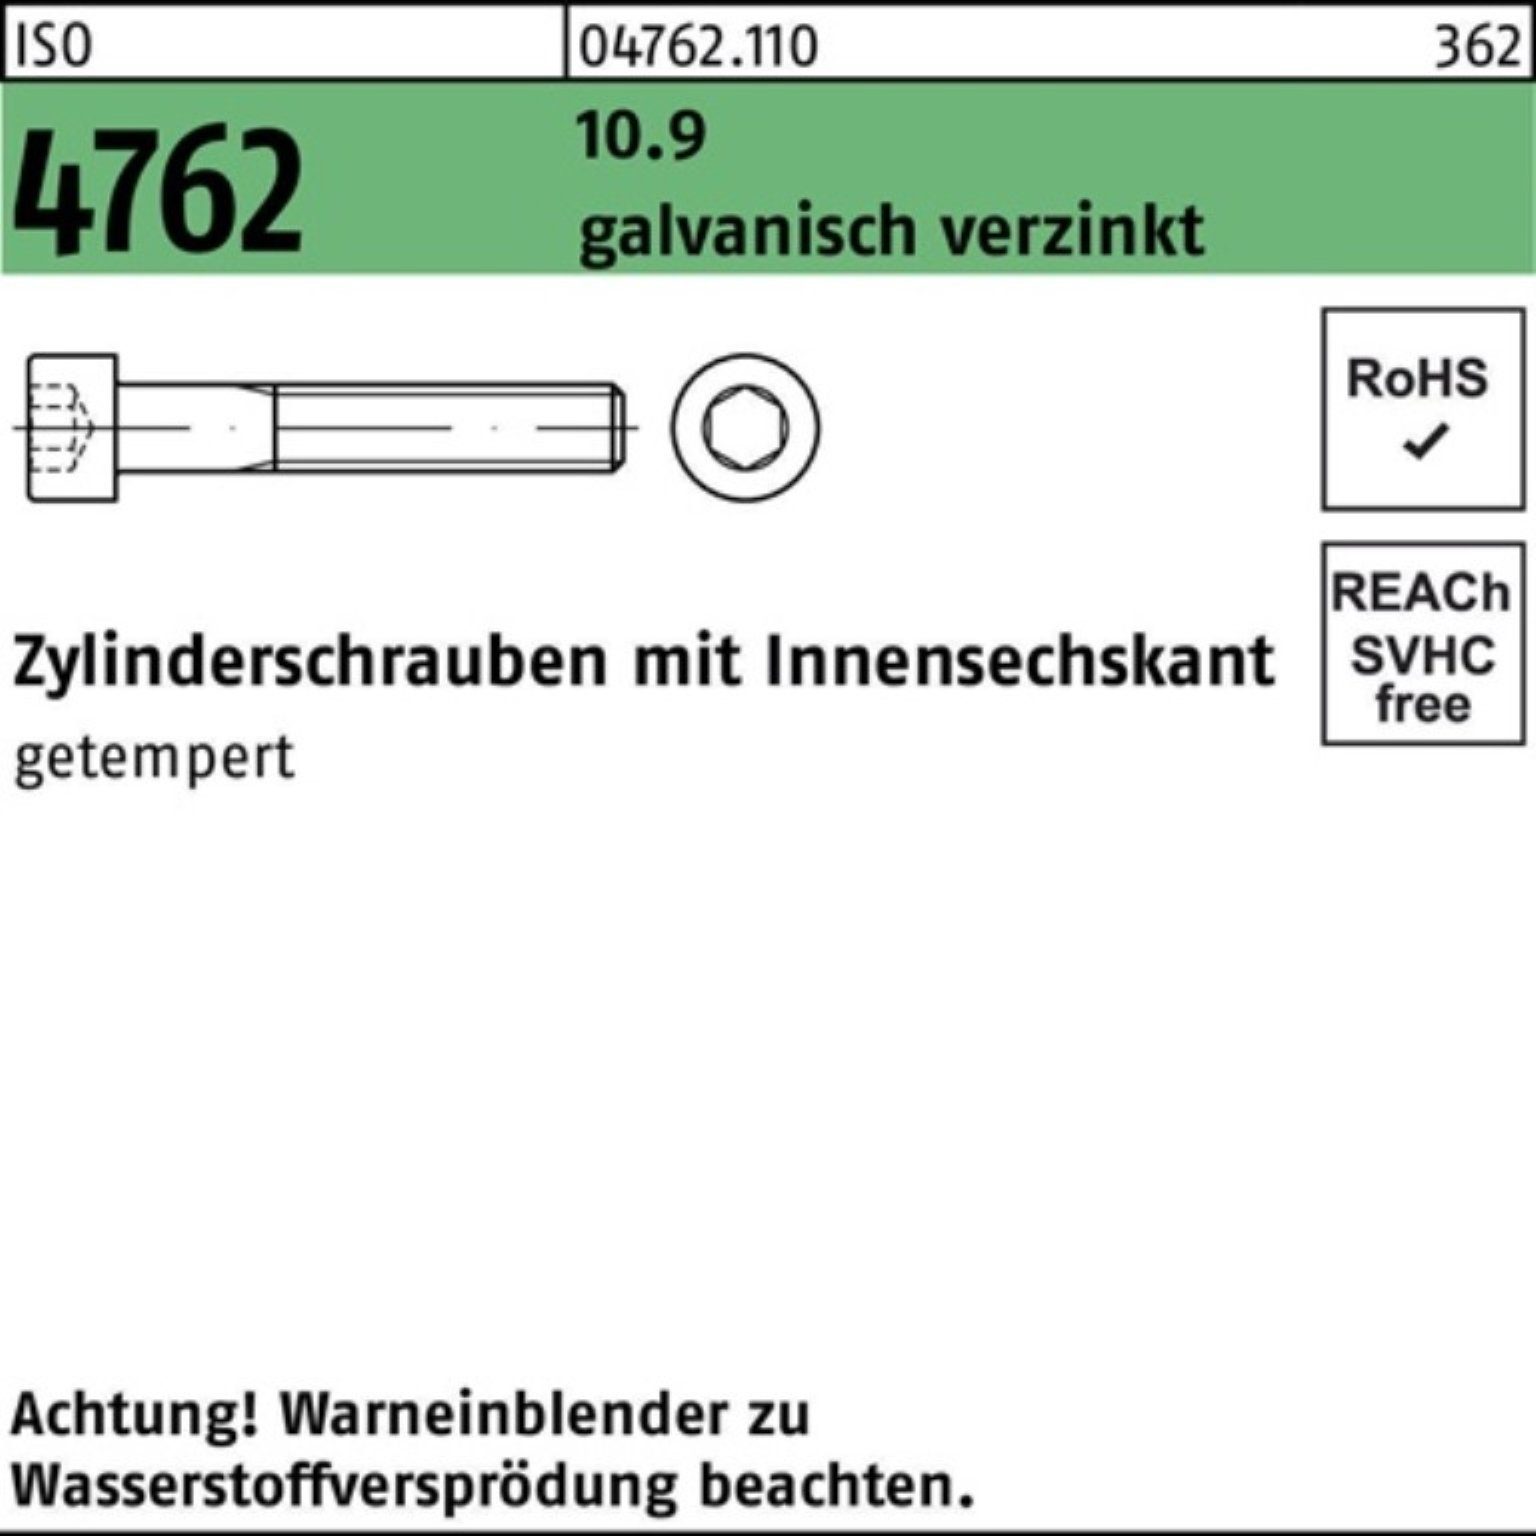 Reyher Zylinderschraube ISO galv.verz. 4762 Zylinderschraube Innen-6kt 10.9 M10x85 100er Pack